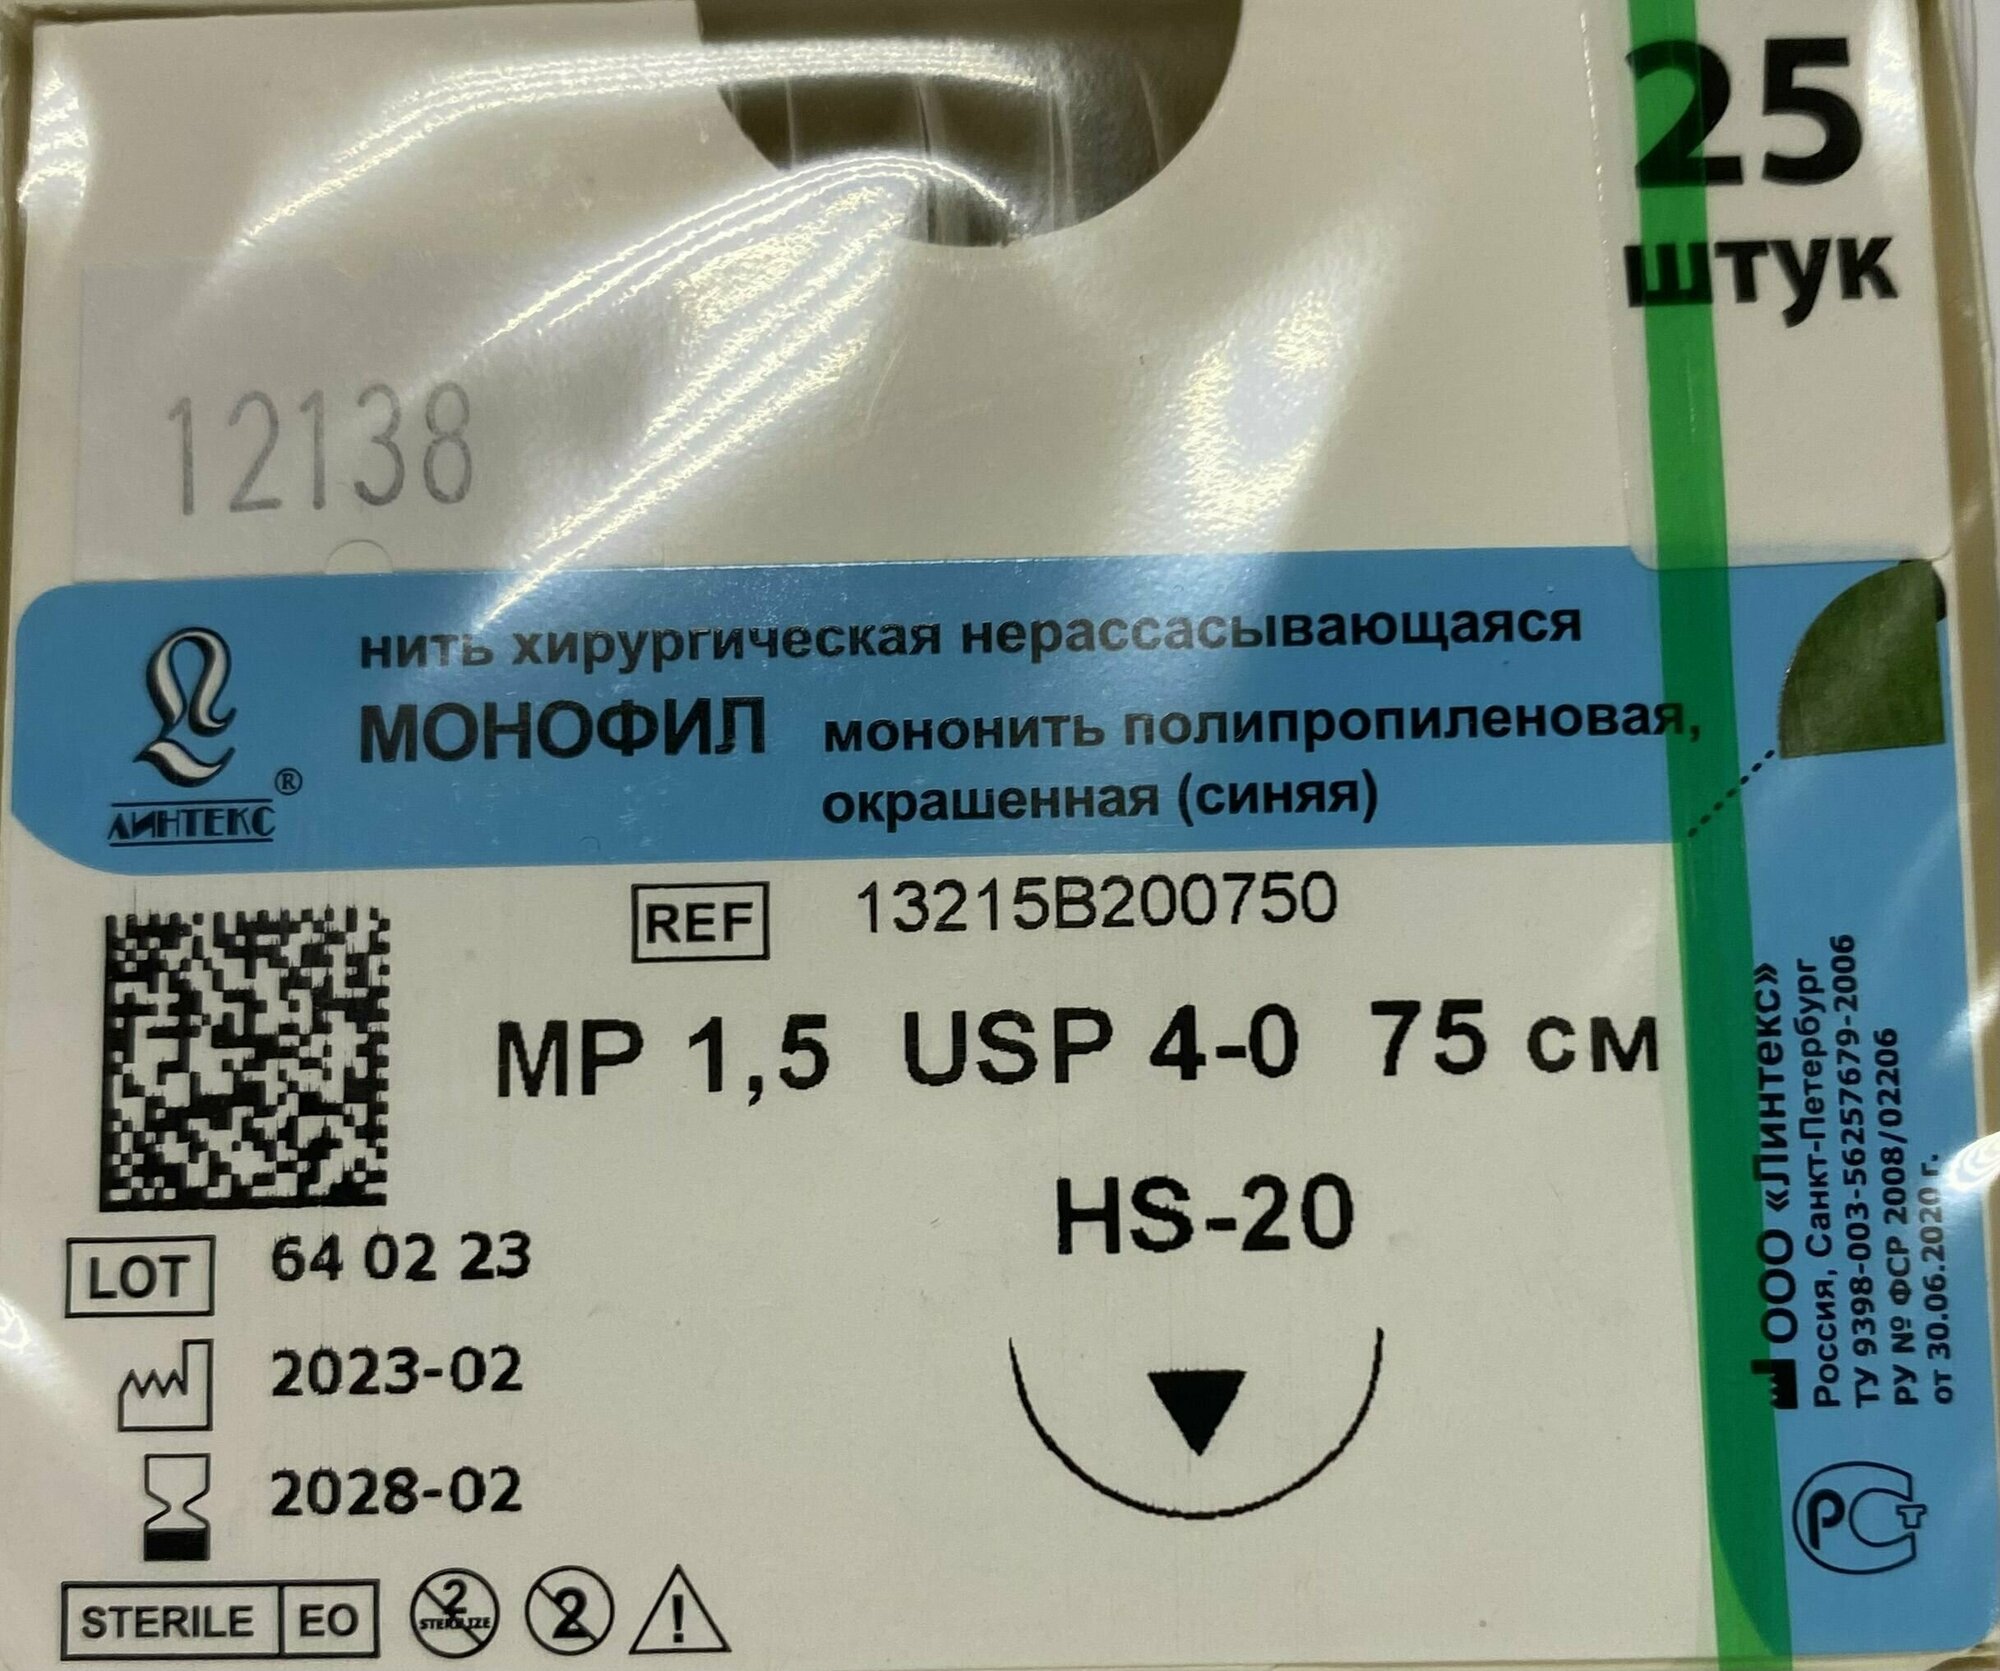 Шовный материал хирургический монофил полипропилен USP 4-0 (МР 1,5), 75см, с иглой режущая HS-20, Синяя (25шт/уп) Линтекс